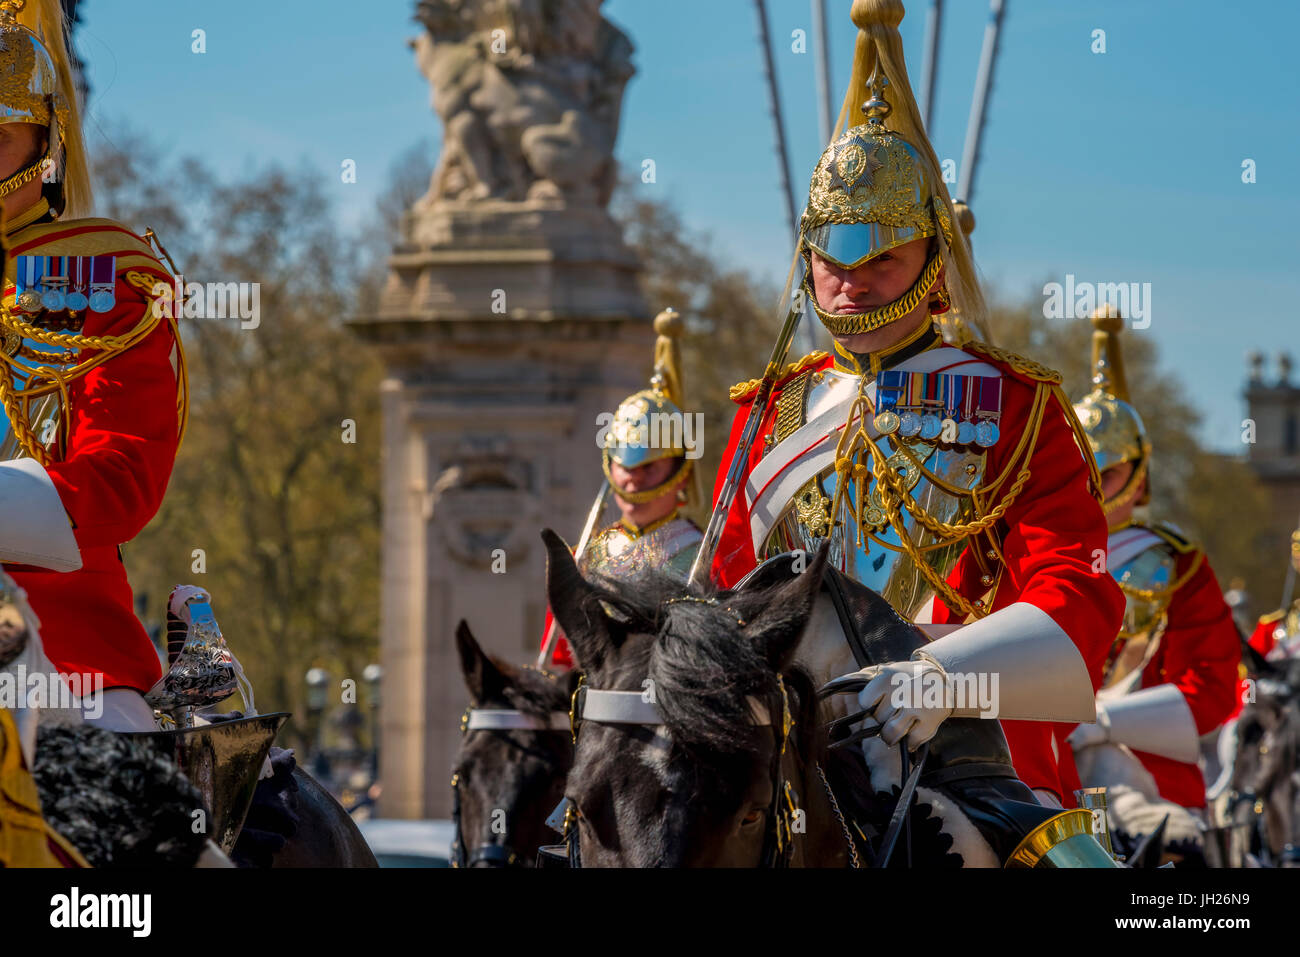 Relève de la garde, le palais de Buckingham, le Mall, Londres, Angleterre, Royaume-Uni, Europe Banque D'Images